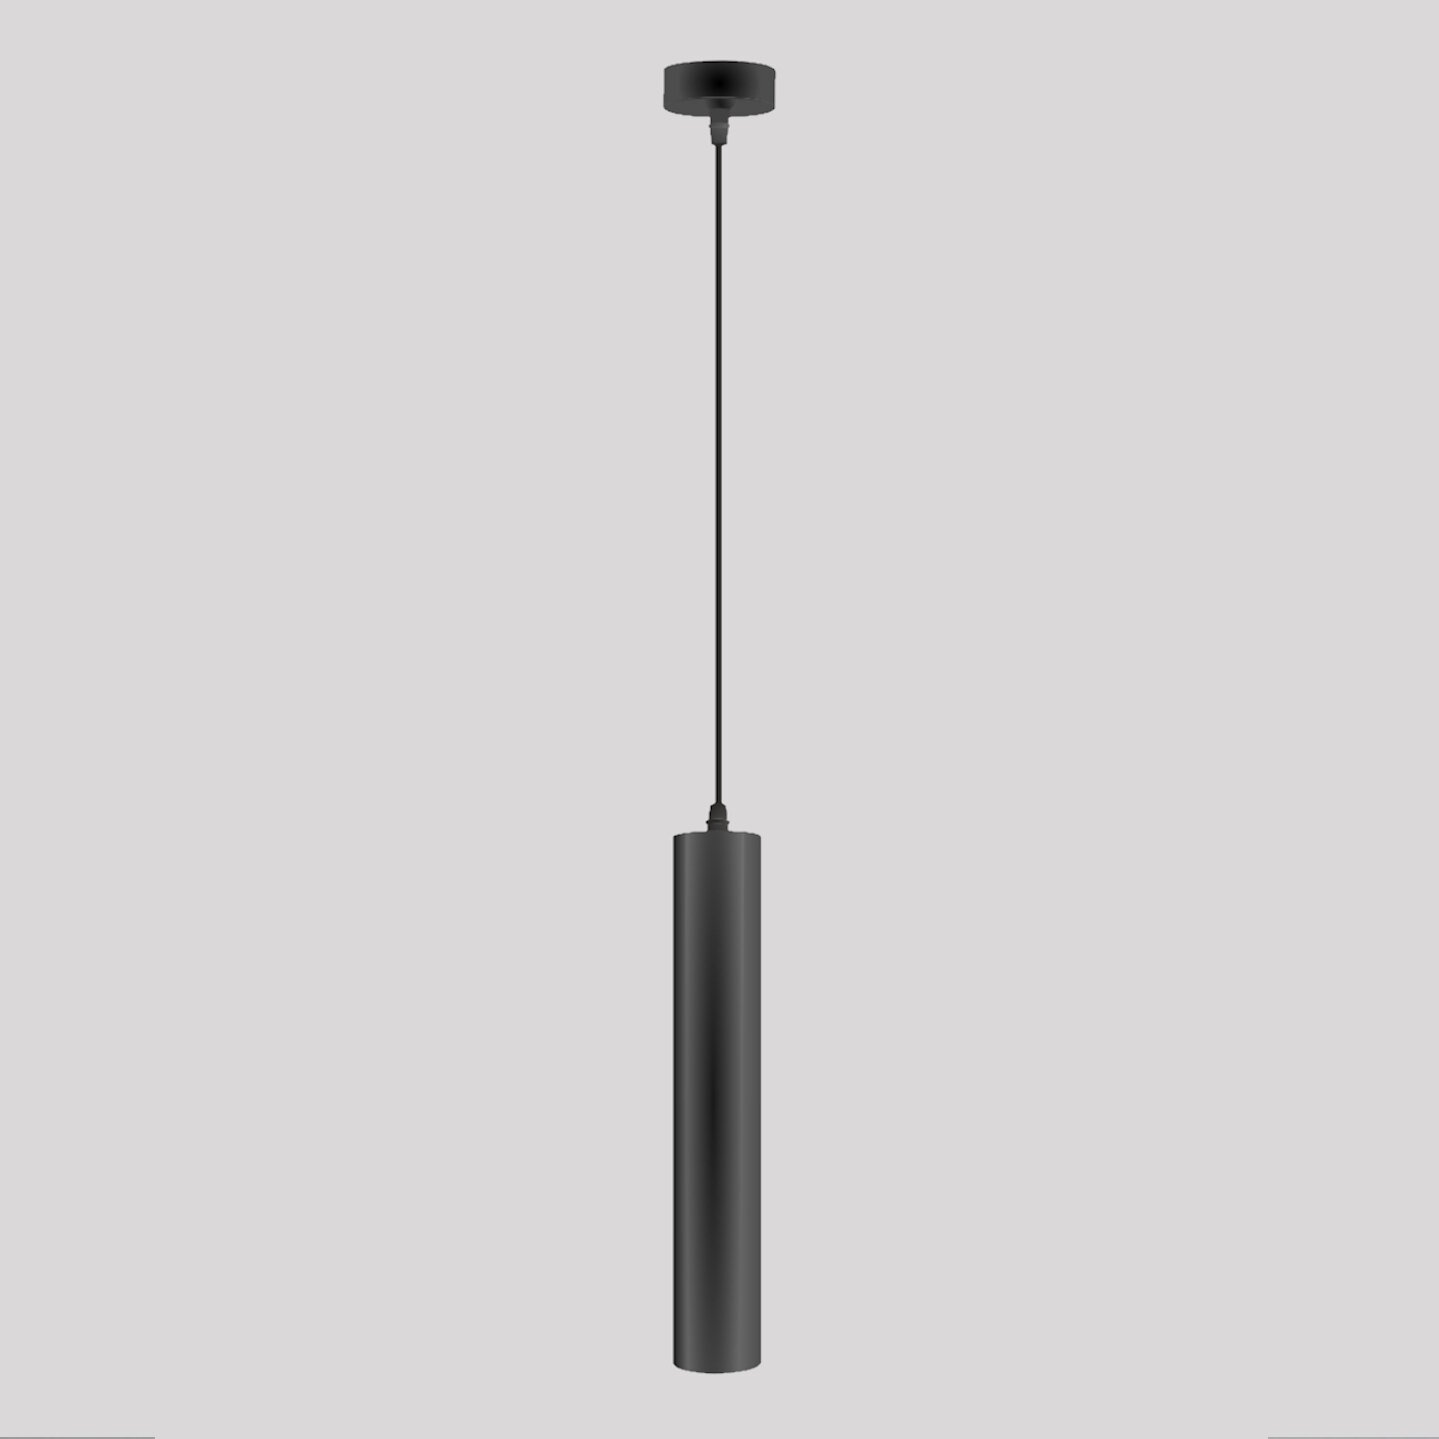 Светильник подвесной Sapfire металлический GU10, 50 Вт, цвет: черный